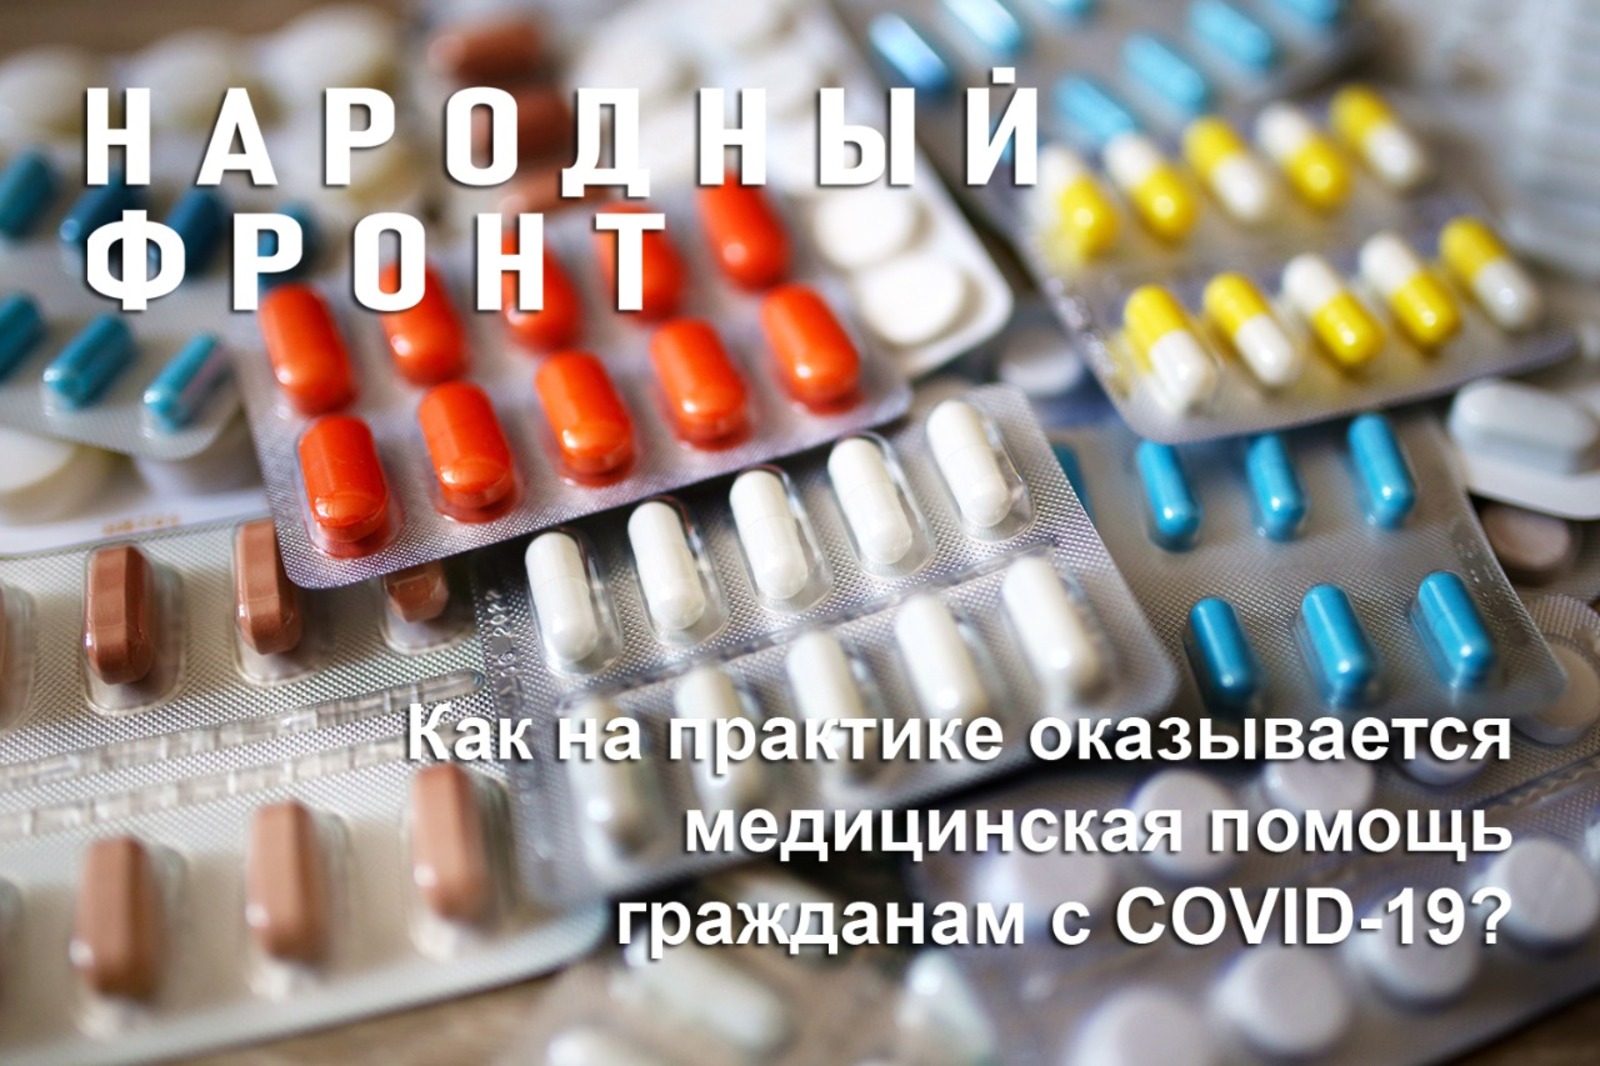 Народный фронт предлагает оценить доступность медпомощи для амбулаторных пациентов с COVID-19.